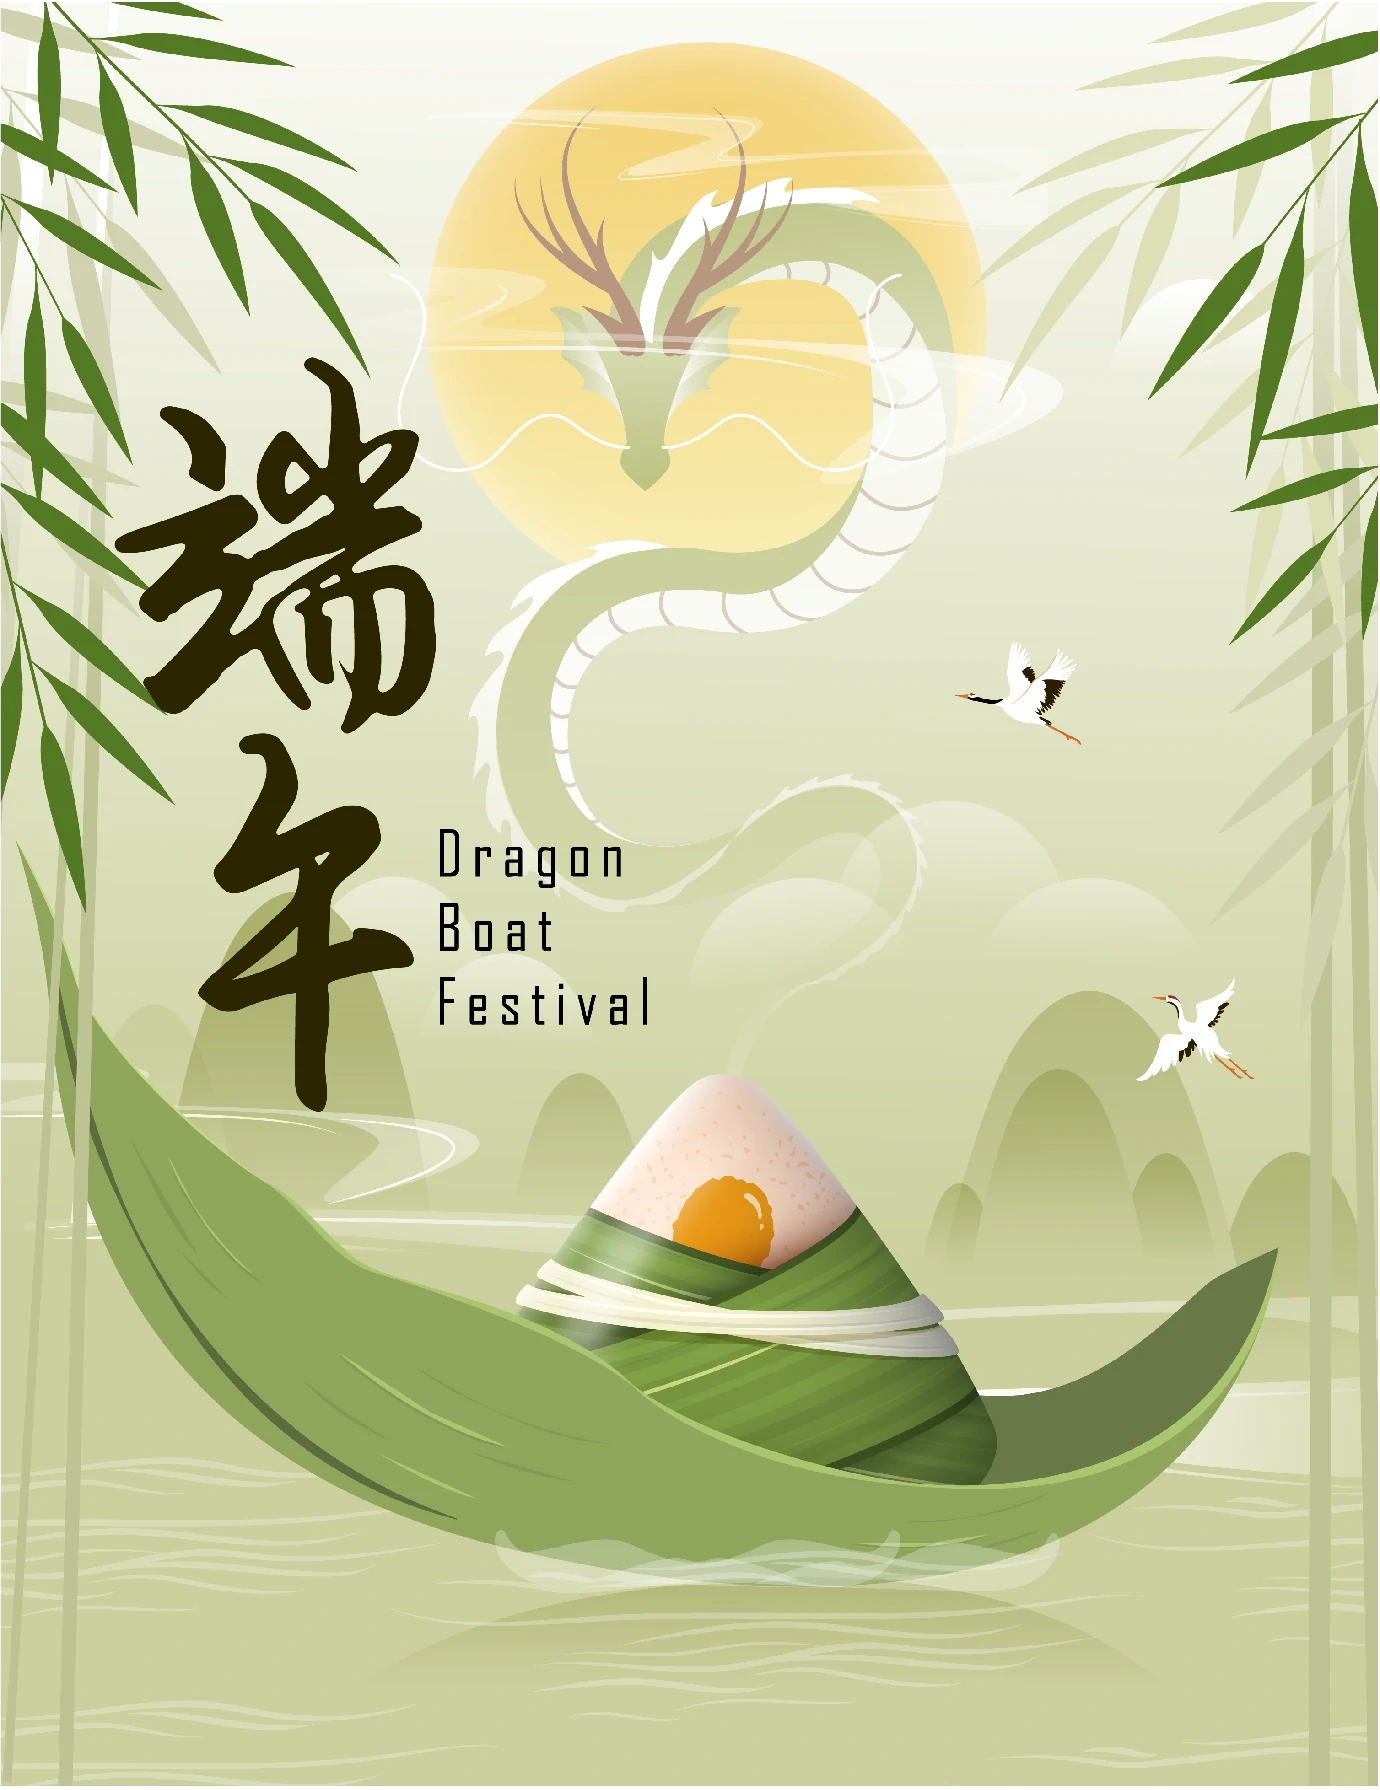 中国传统节日端午节端午安康赛龙舟包粽子插画海报AI矢量设计素材【021】